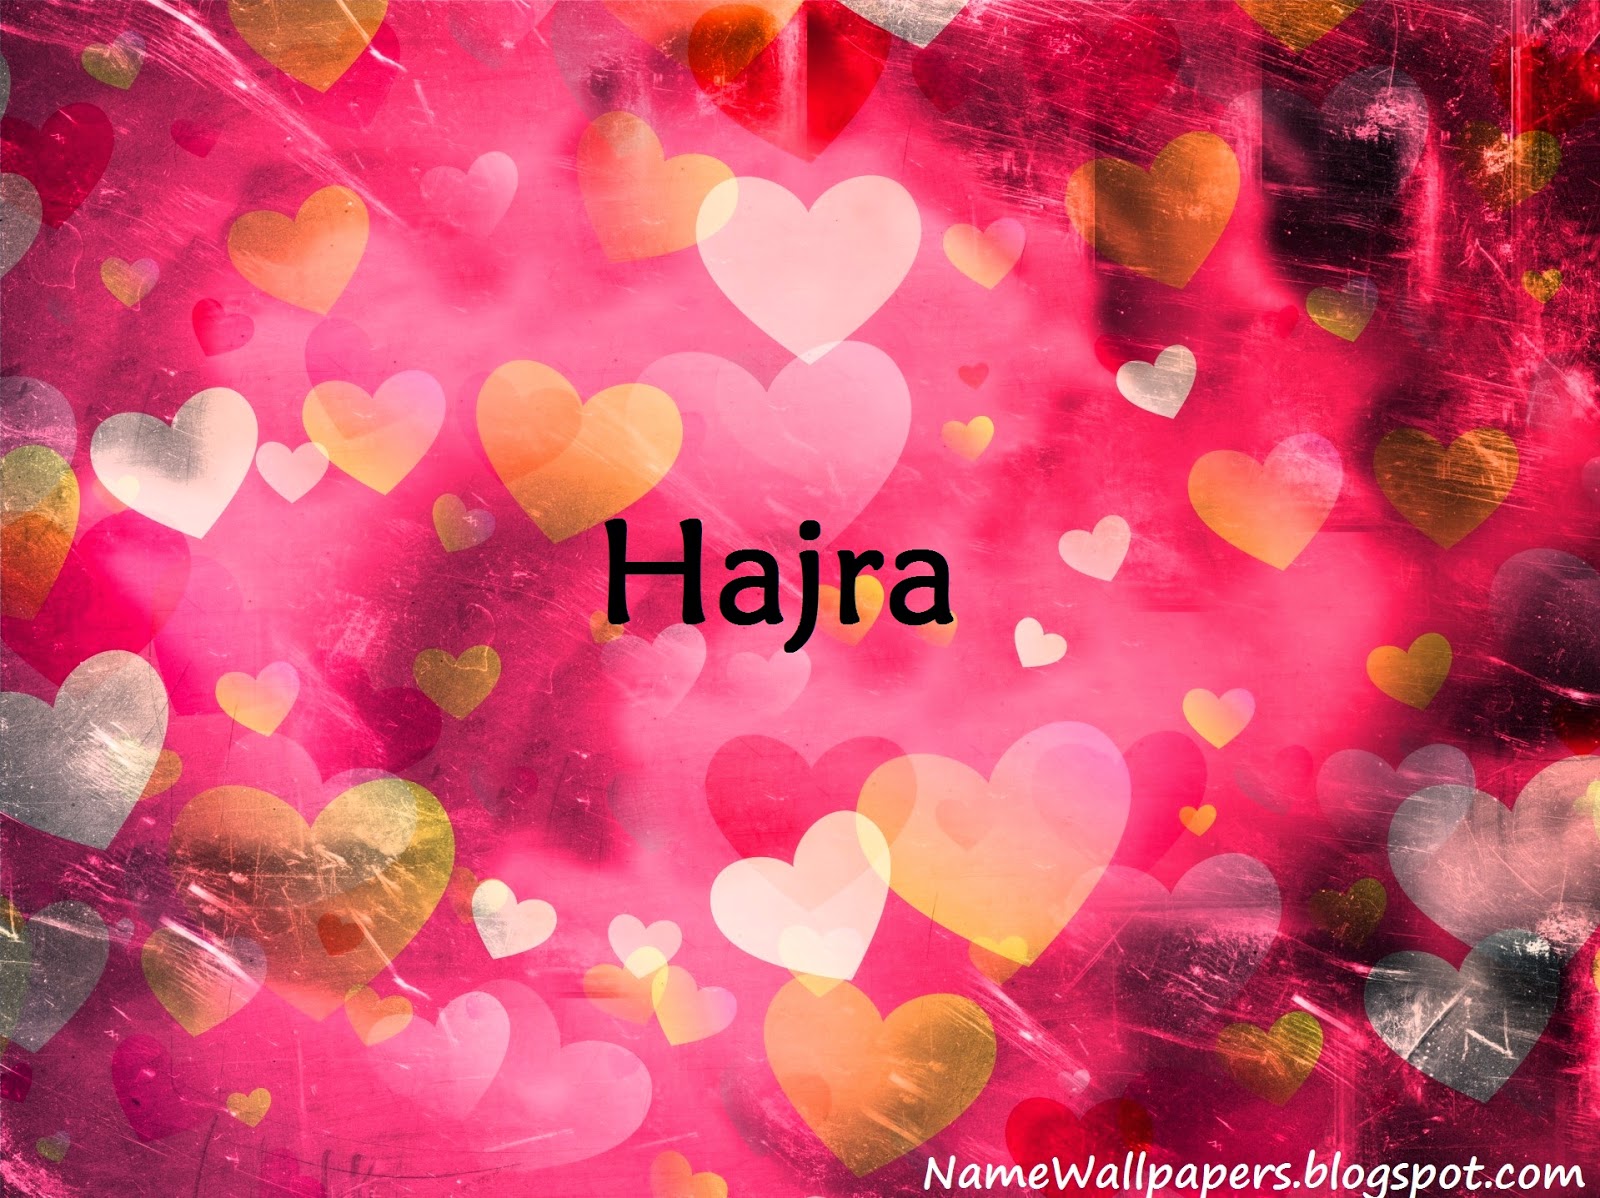 hajra name wallpaper,corazón,rosado,día de san valentín,amor,modelo